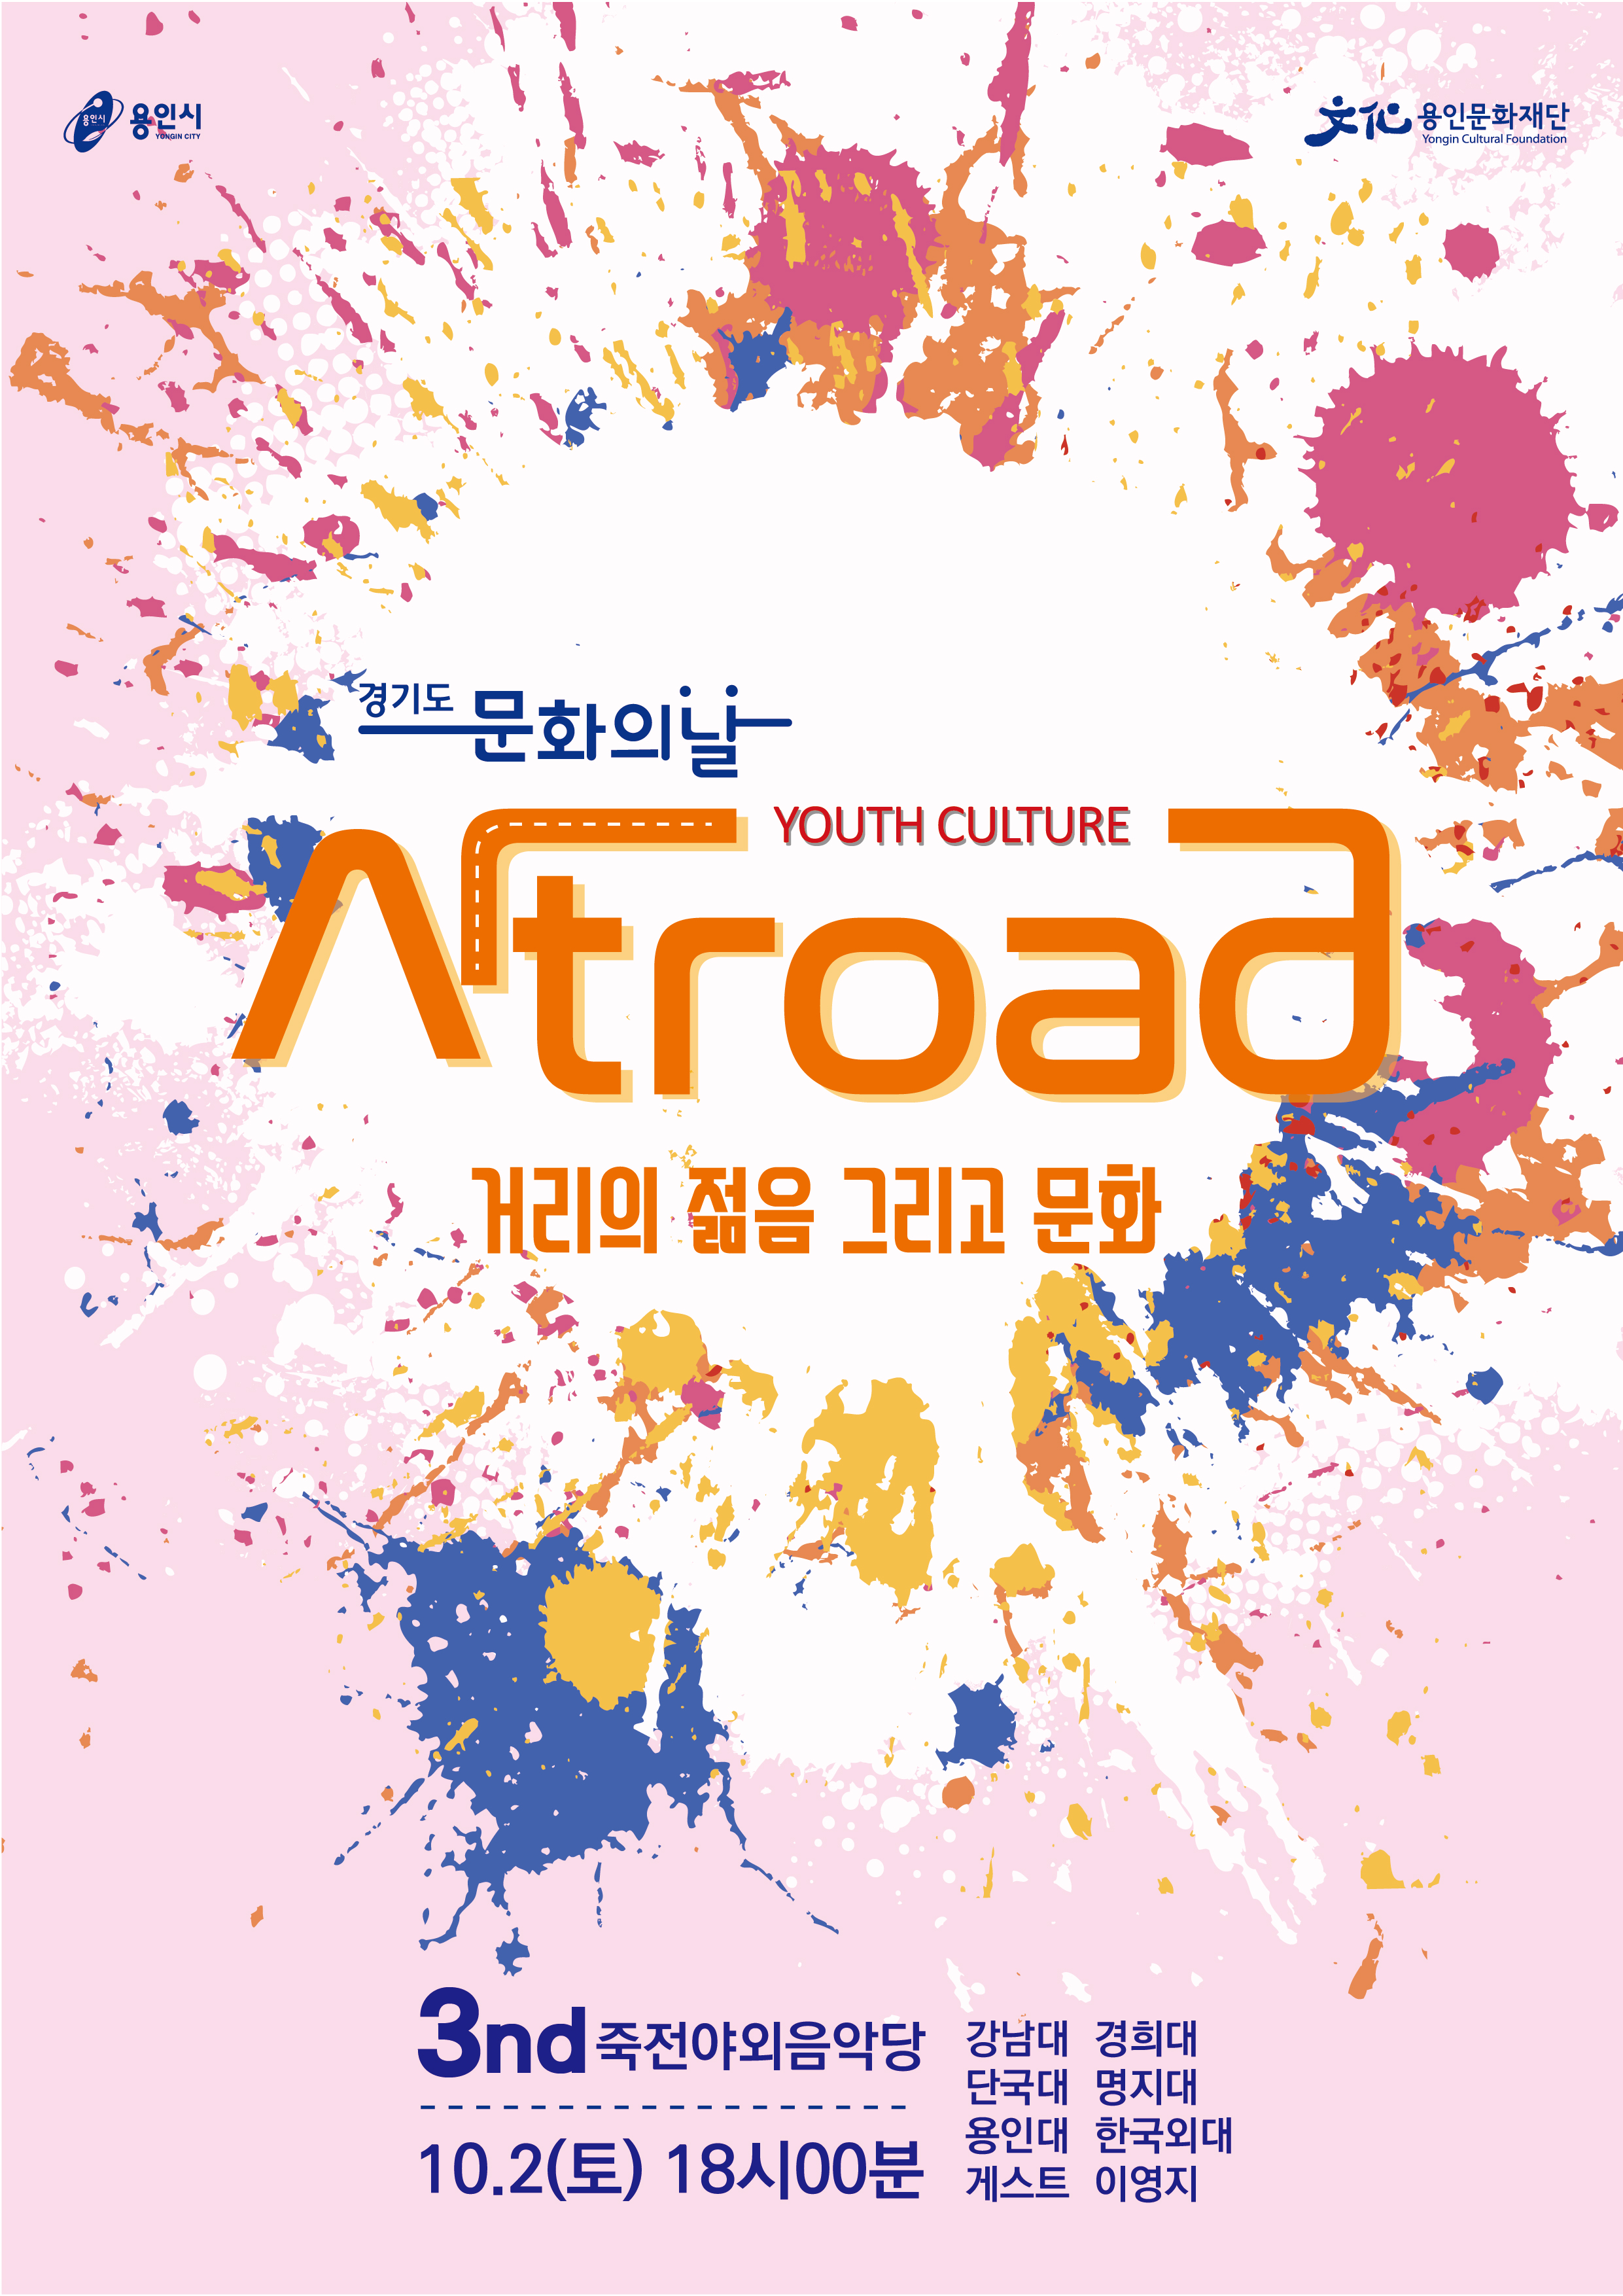  용인시 대학생 문화축제 <아트로드> 3차 공연 홍보포스터